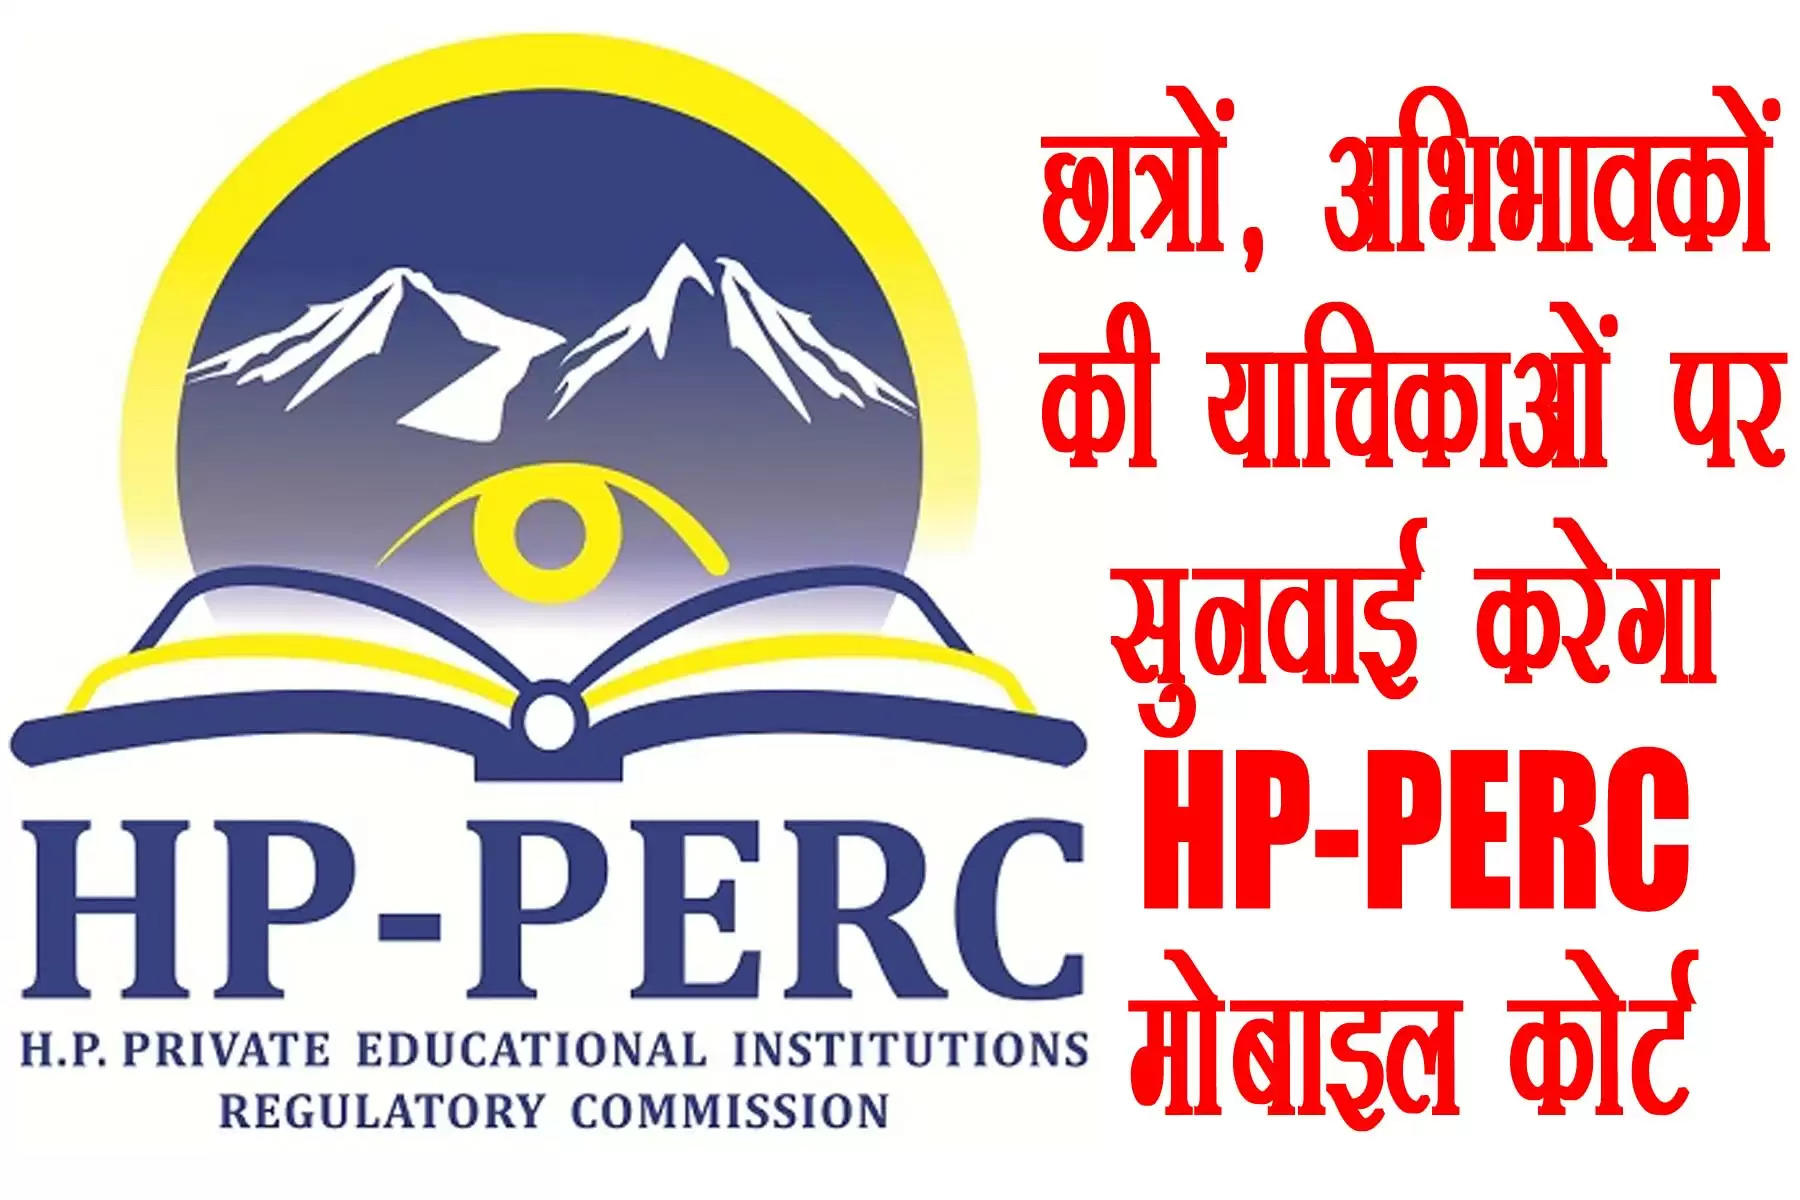 हिमाचल प्रदेश निजी शिक्षण संस्थान नियामक आयोग (HP-PERC) अभिभावक एवं छात्र हित में बड़ा कदम उठाने जा रहा है। हिमाचल प्रदेश निजी शिक्षण संस्थान नियामक आयोग प्रदेश के छह स्थानों पर मोबाइल अदालतों का आयोजन करेगा। इन छह स्थानों पर निजी शिक्षण संस्थानों की भरमार है। नियामक आयोग का यह कदम छात्रों, अभिभावकों और संकाय सदस्यों की शिकायतों का त्वरित निवारण सुनिश्चित करेगा। मोबाइल अदालत का उद्देश्य शिकायतों का त्वरित निवारण सुनिश्चित करना और शिकायतकर्ताओं के समय व धन की बचत करना है।